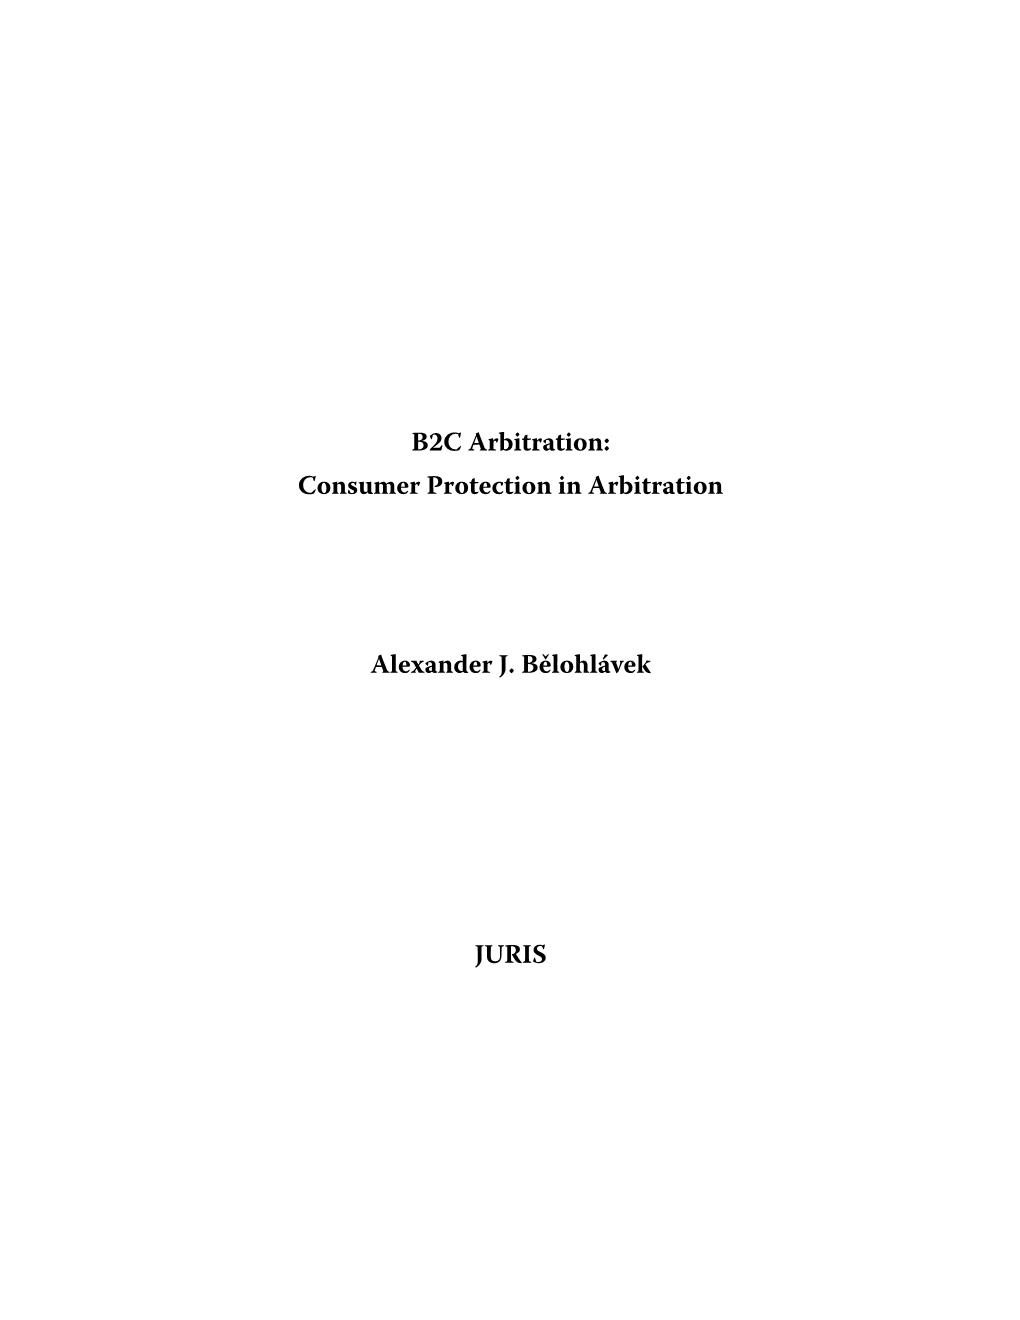 Consumer Protection in Arbitration Alexander J. Bělohlávek JURIS